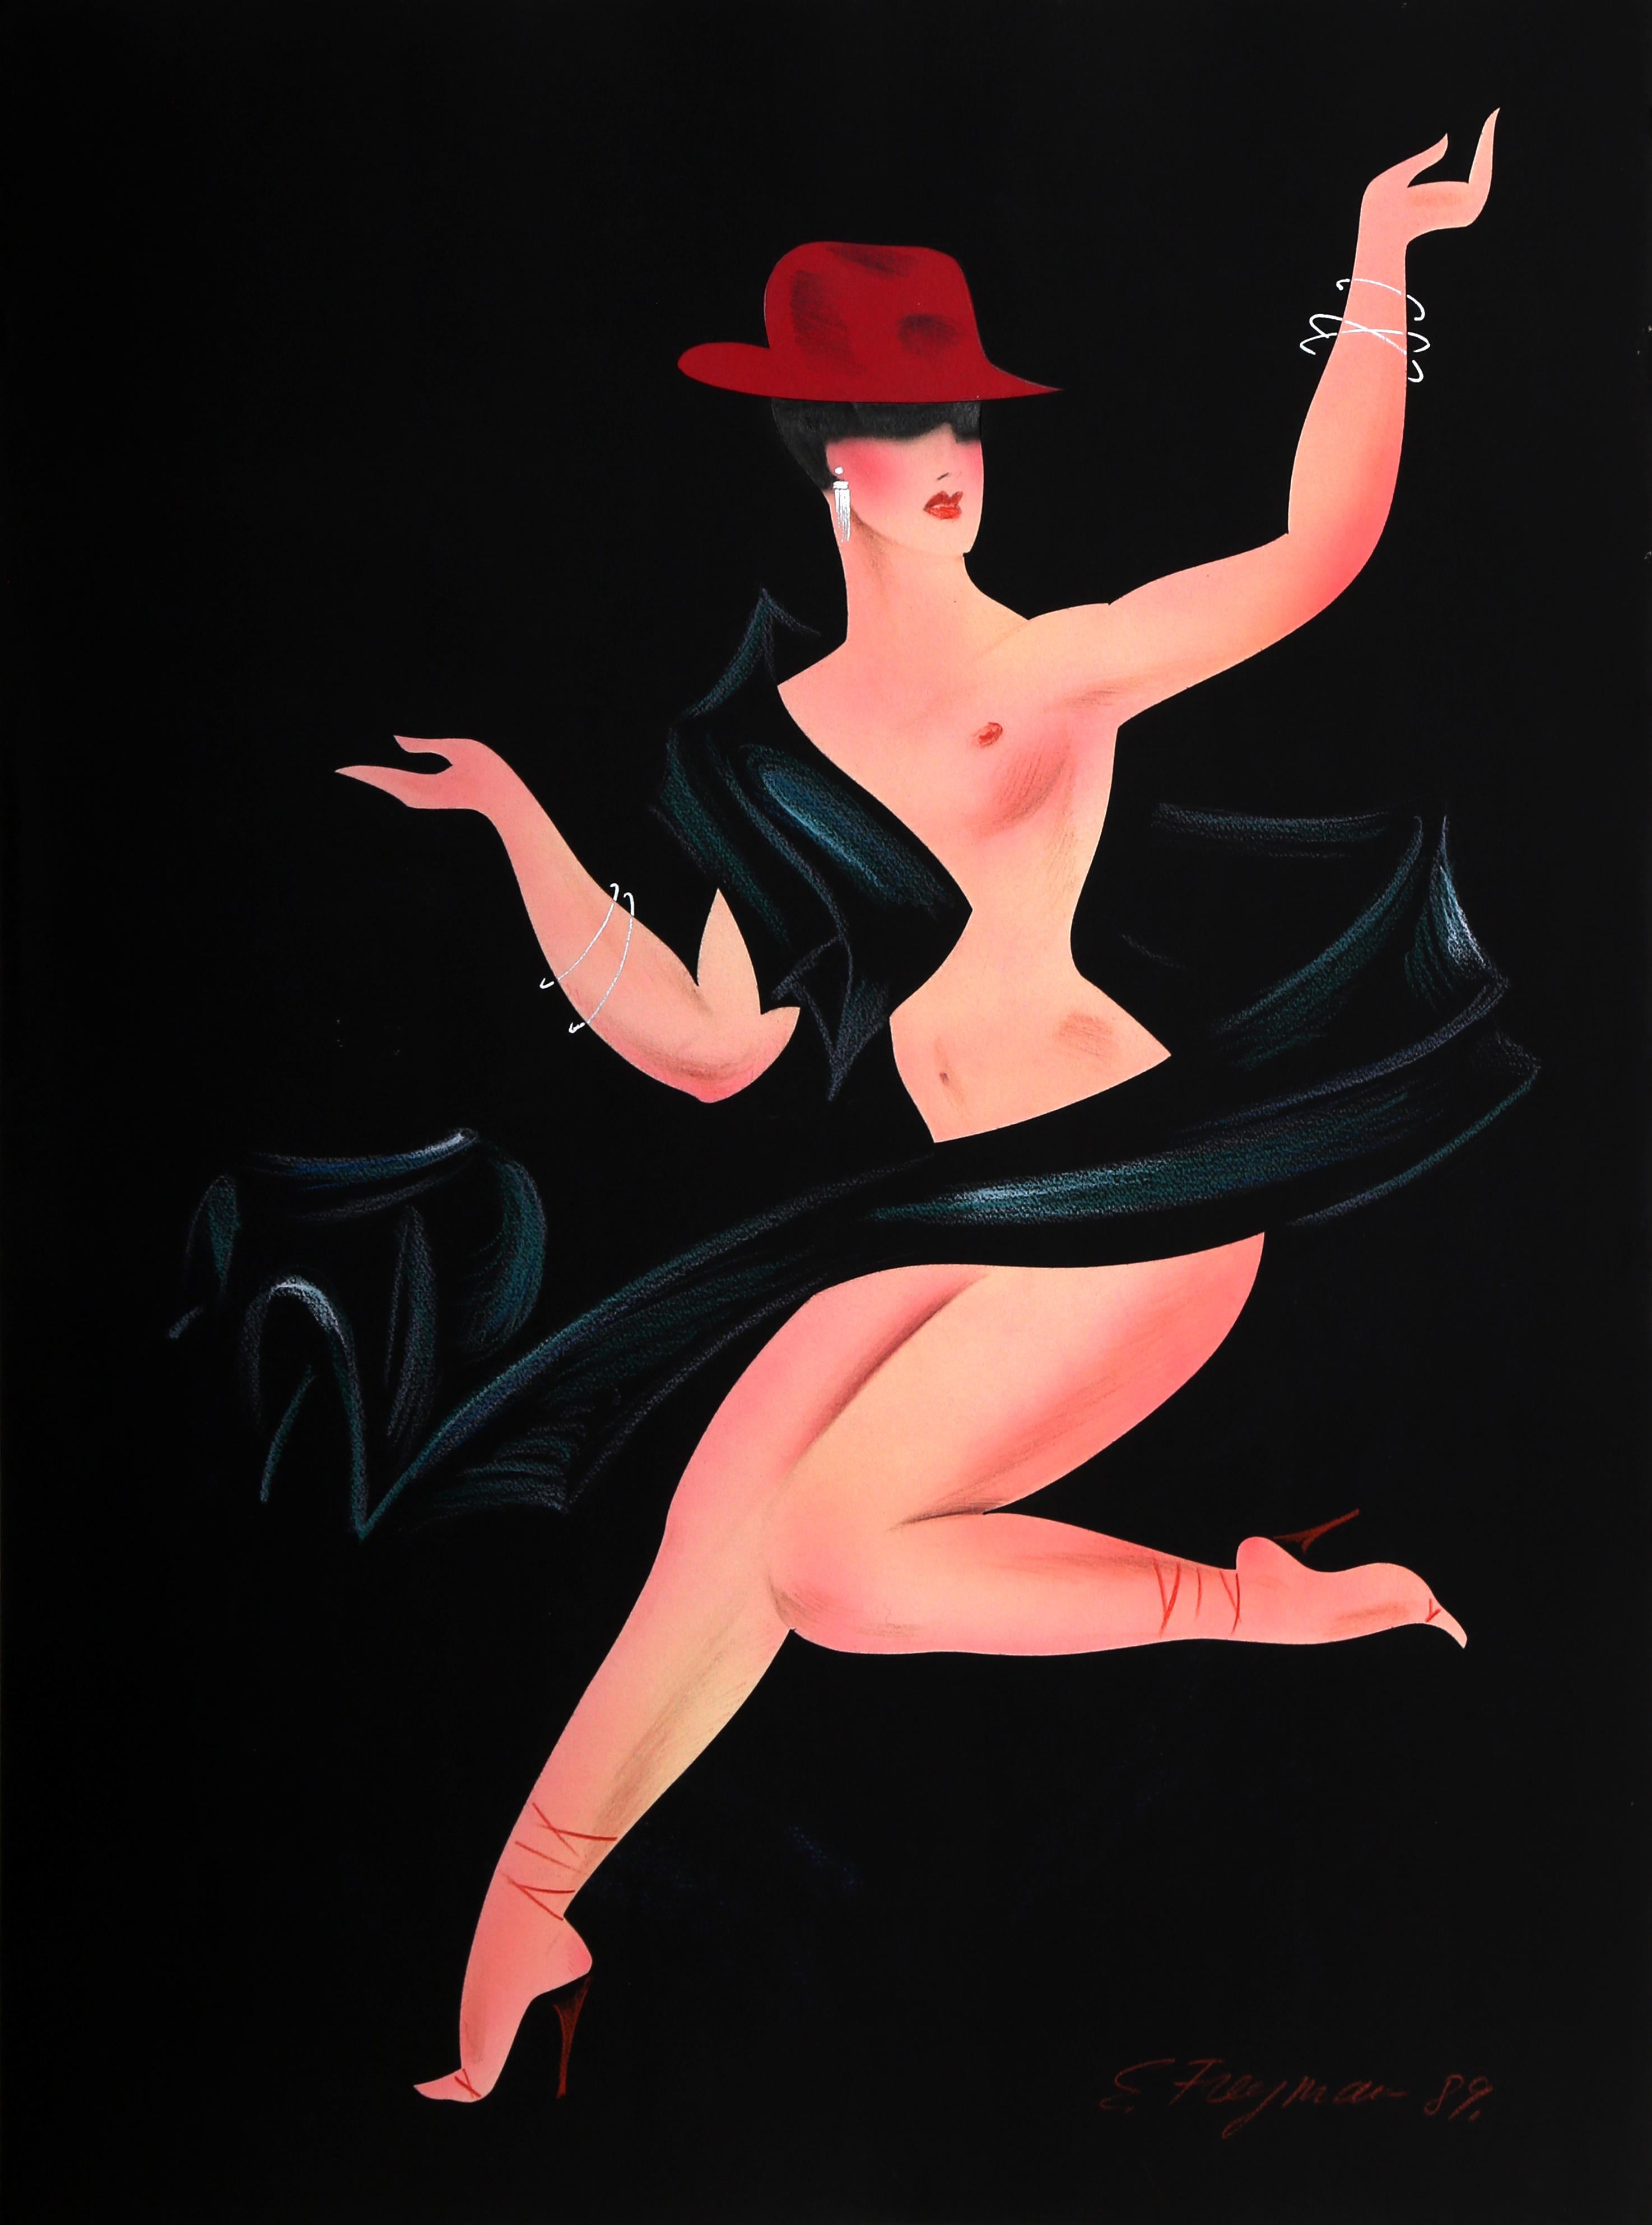 Ein Art-Déco-Werk im Stil der 80er Jahre mit einer tanzenden nackten Dame des zeitgenössischen Künstlers Erik Freyman auf Papier.
Collage mit Pastellkreide auf Papier, rechts unten signiert.